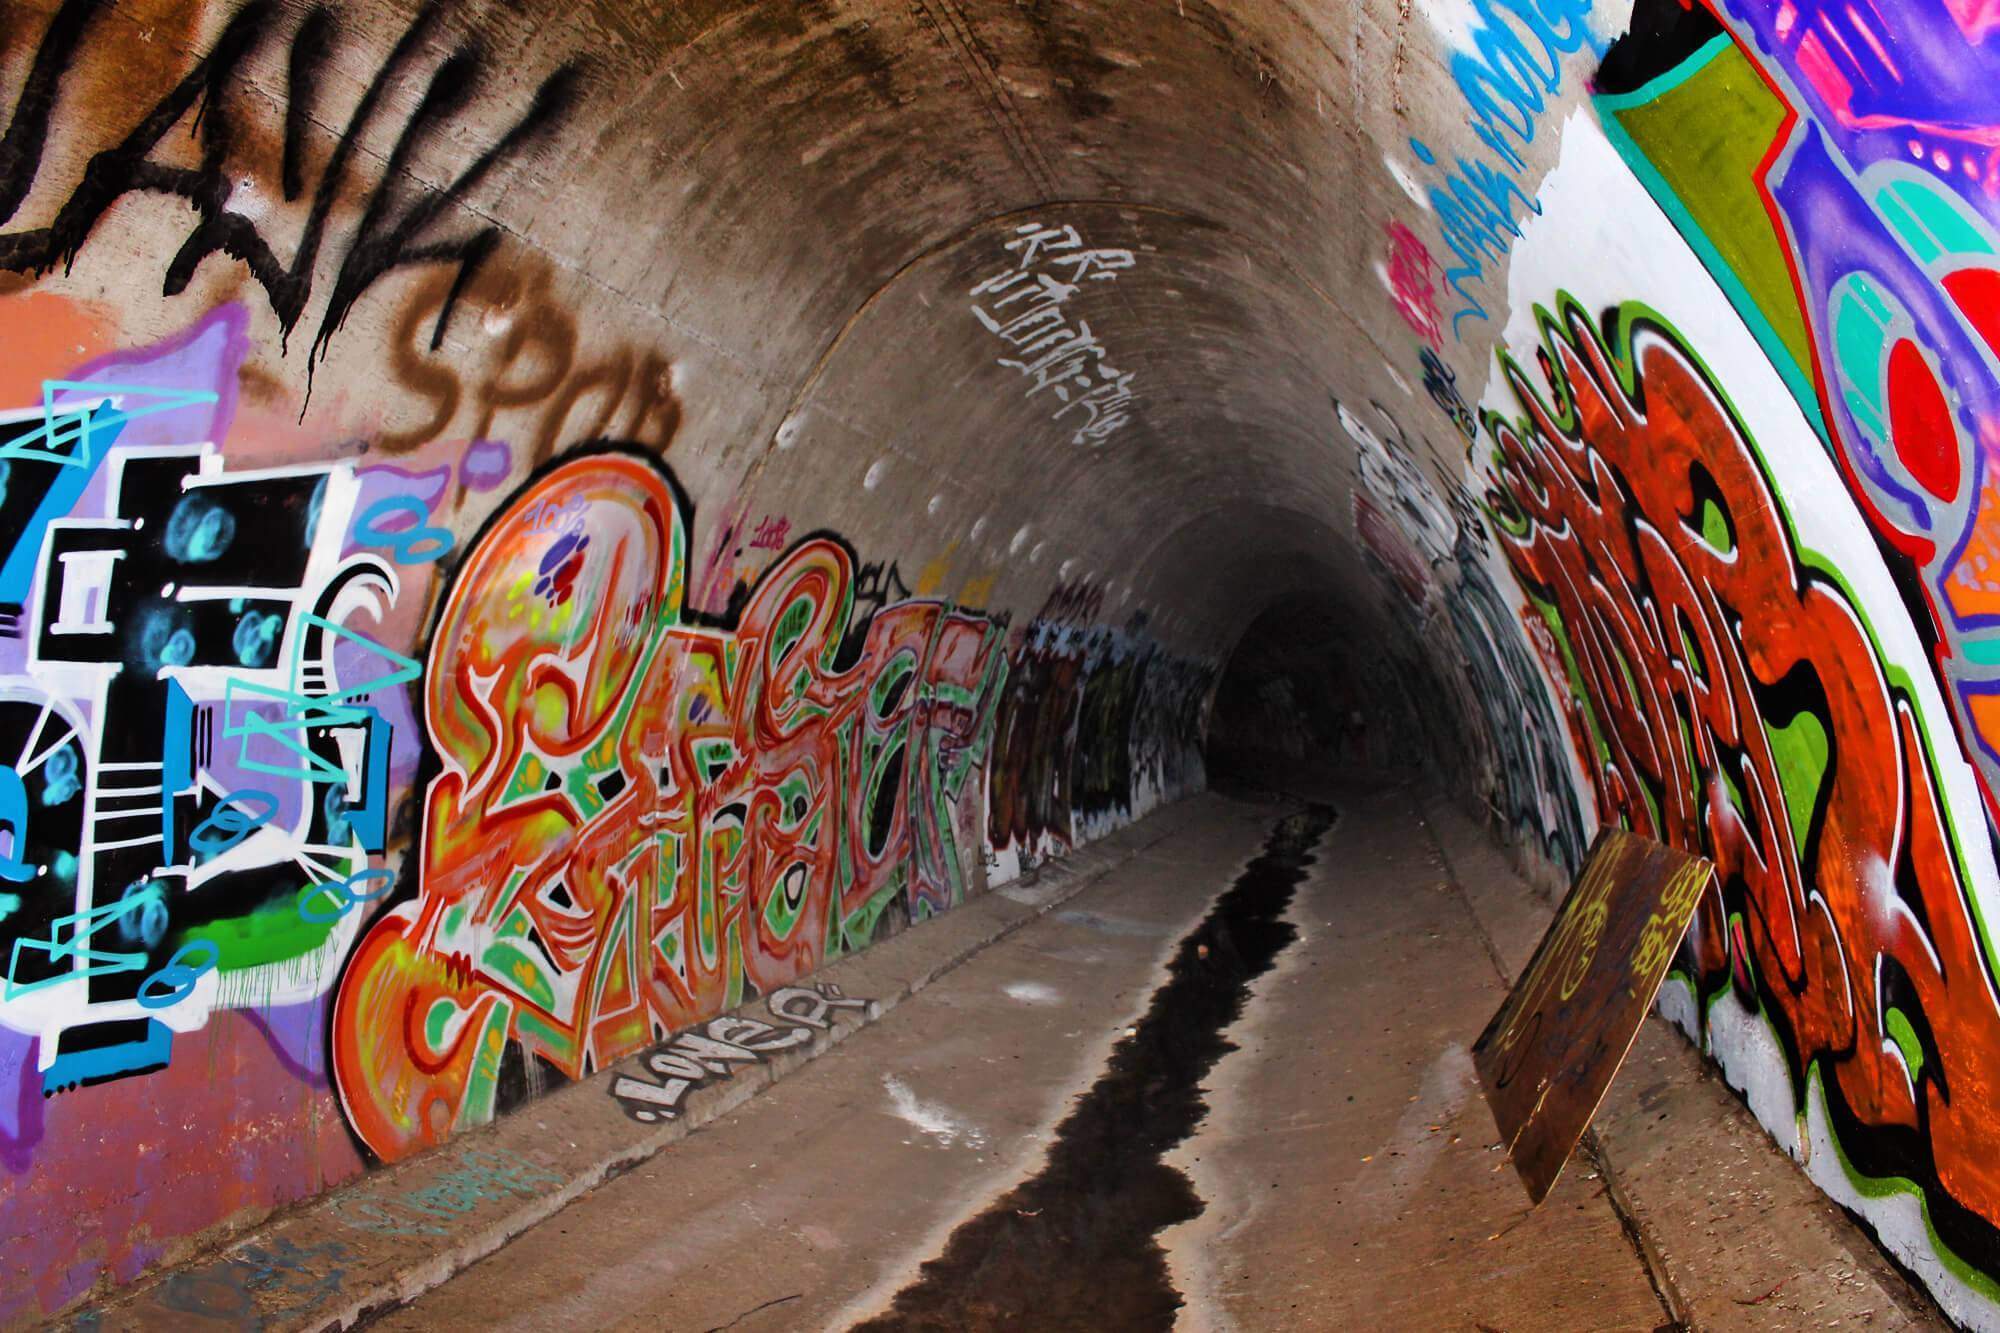 The faze rug tunnel